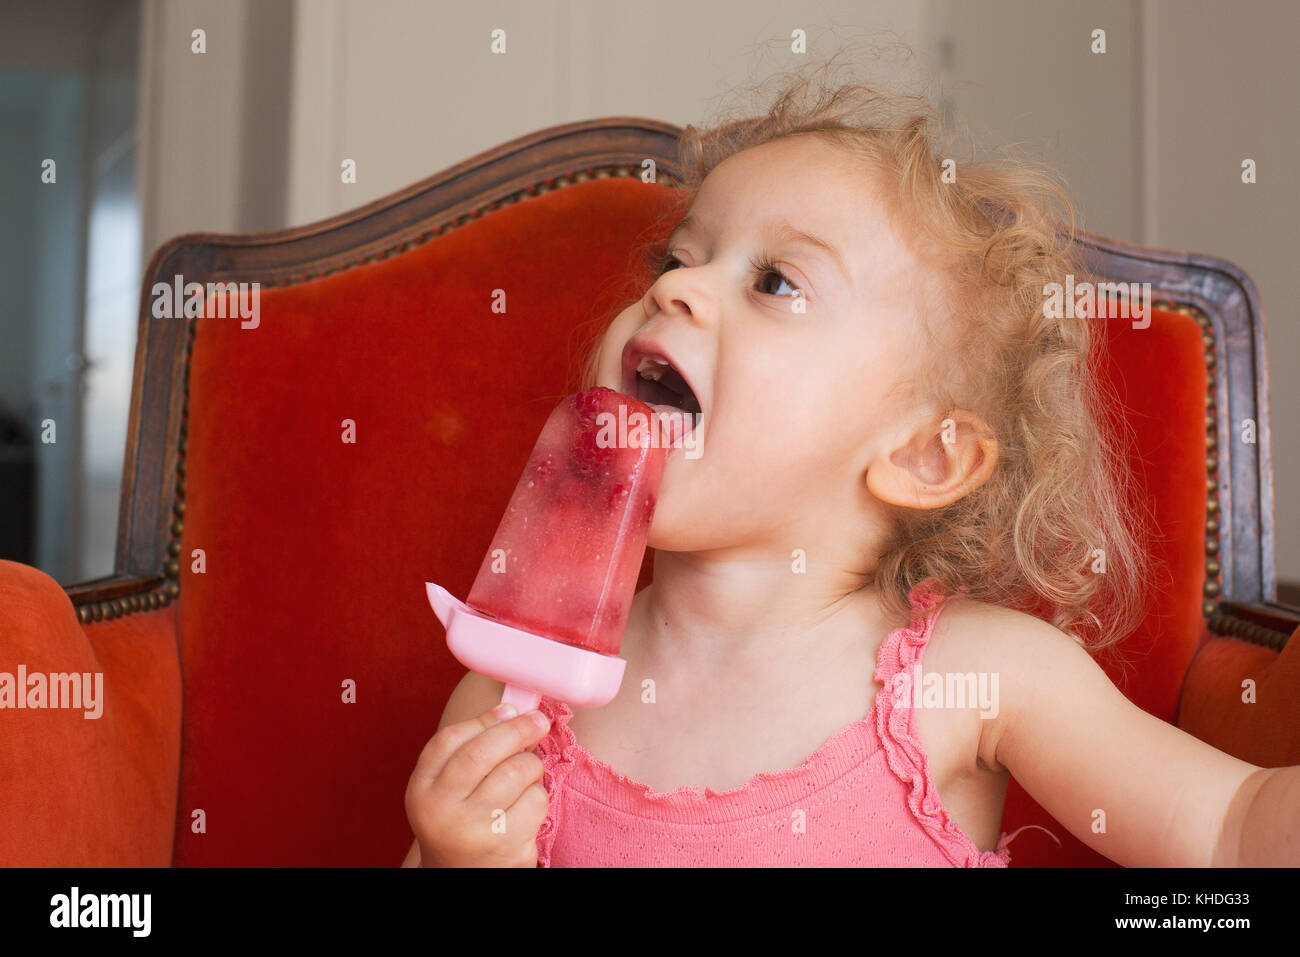 Little girl eating popsicle Stock Photo